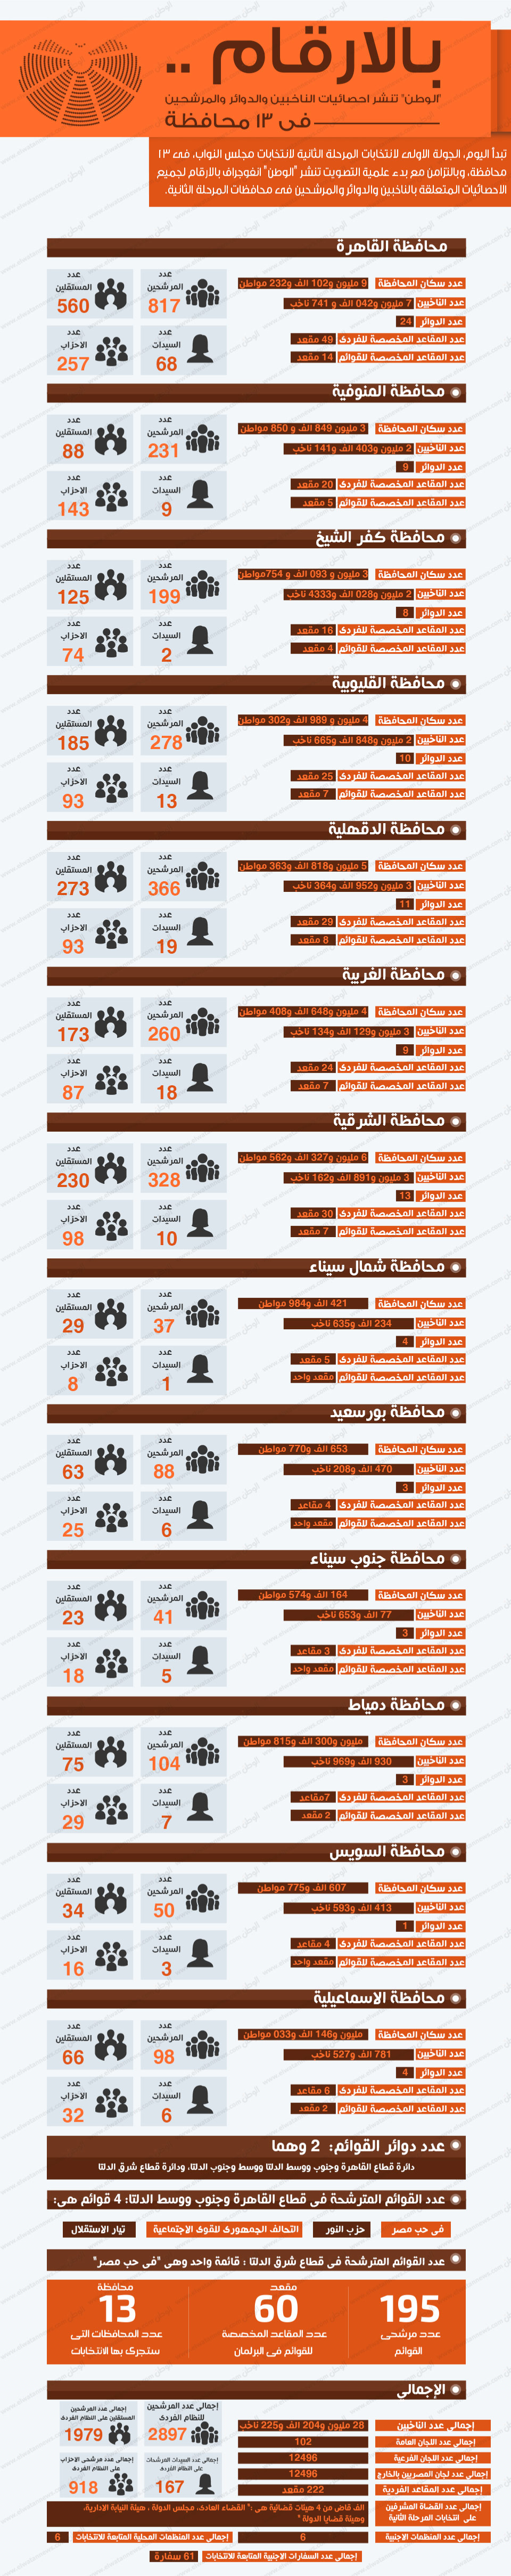 بالأرقام .. &quot;الوطن&quot; تنشر إحصائيات الناخبين والدوائر والمرشحين في 13 محافظة